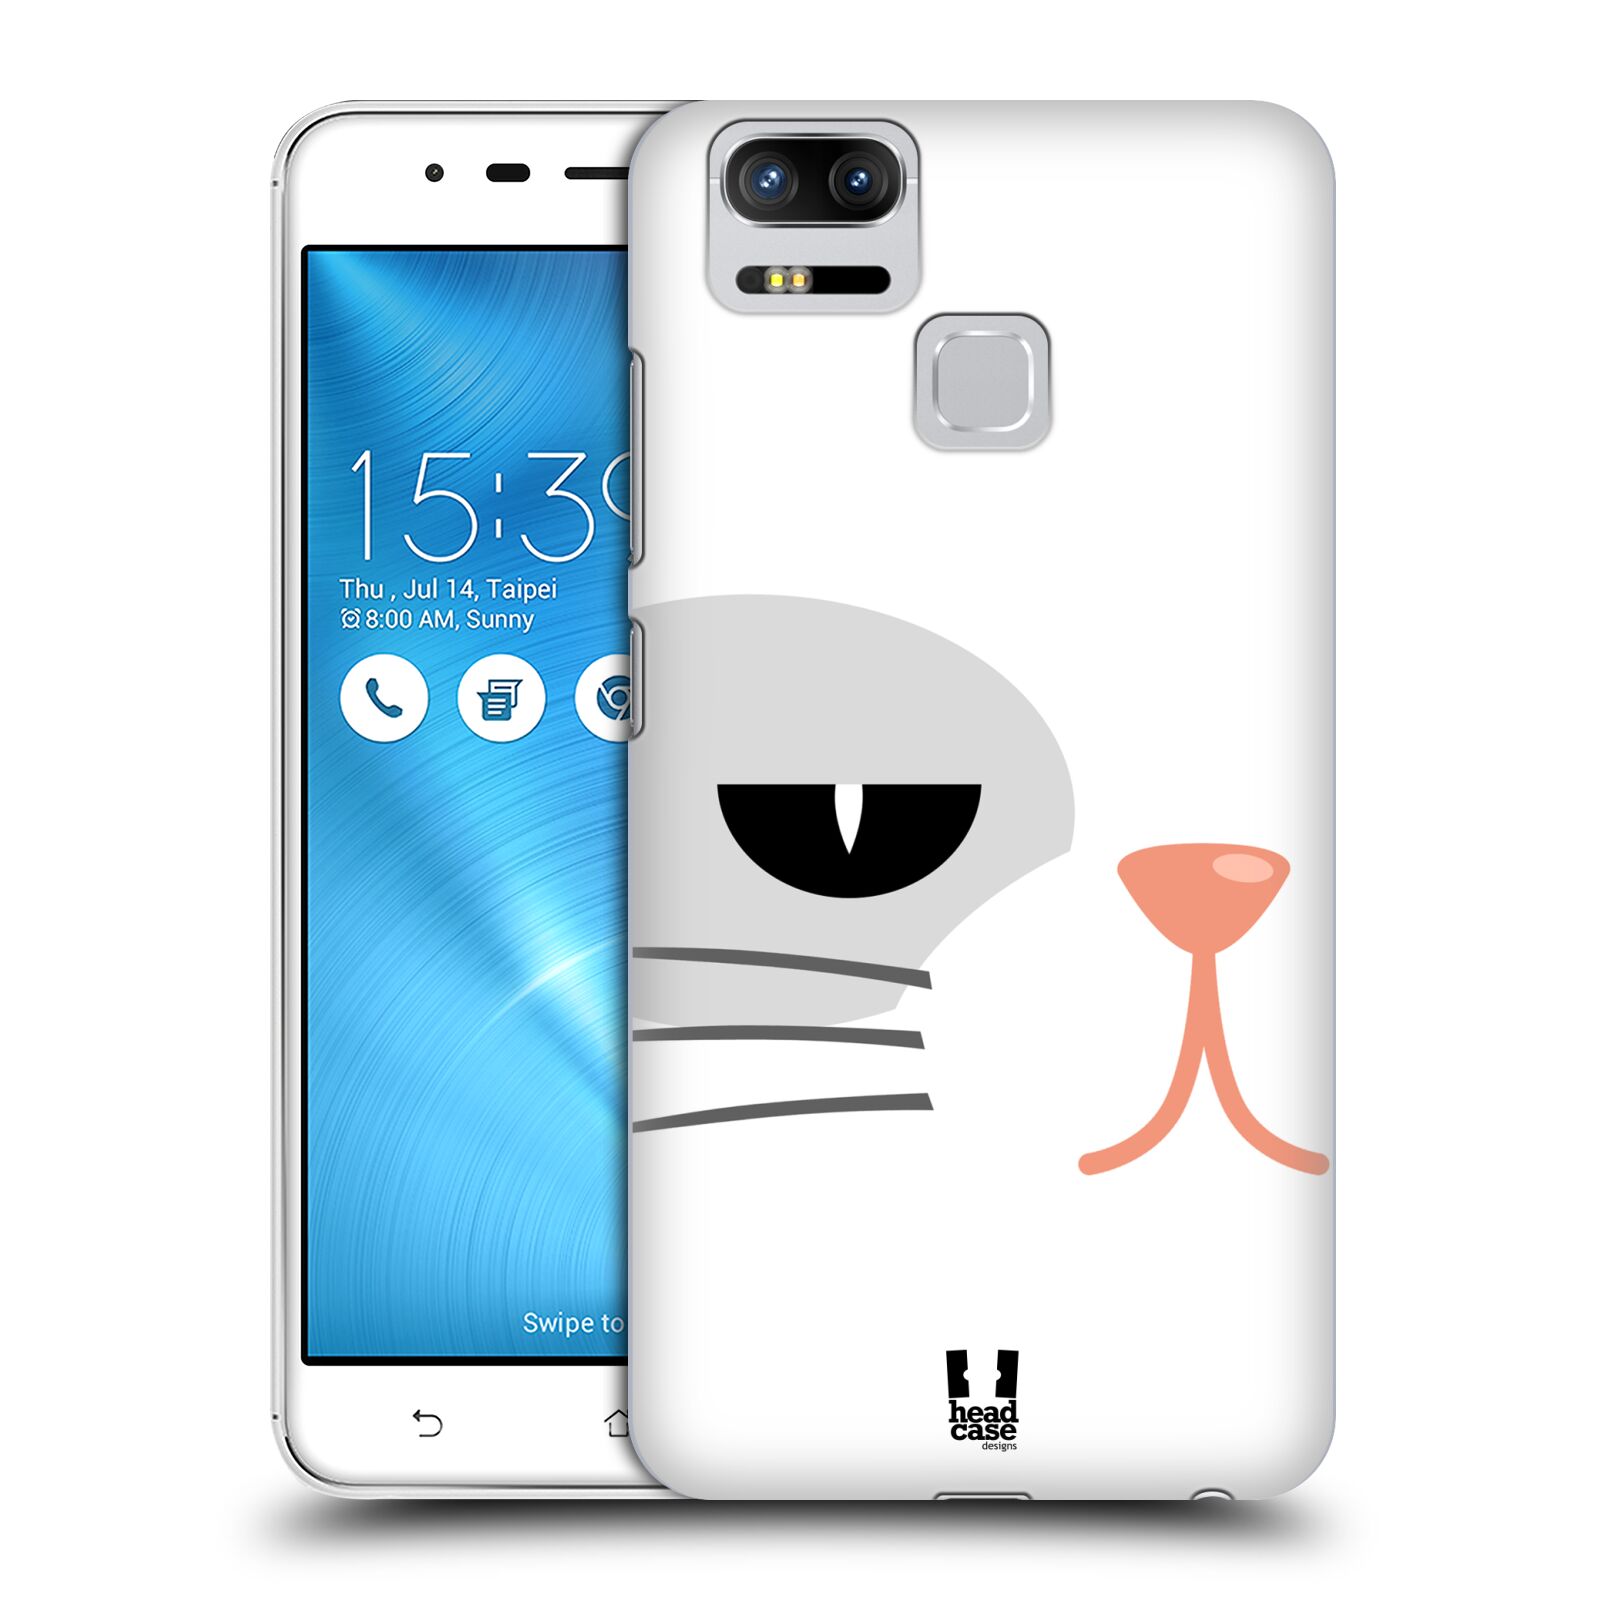 HEAD CASE plastový obal na mobil Asus Zenfone 3 Zoom ZE553KL vzor Celá tvář zvíře kreslený portrét kočička